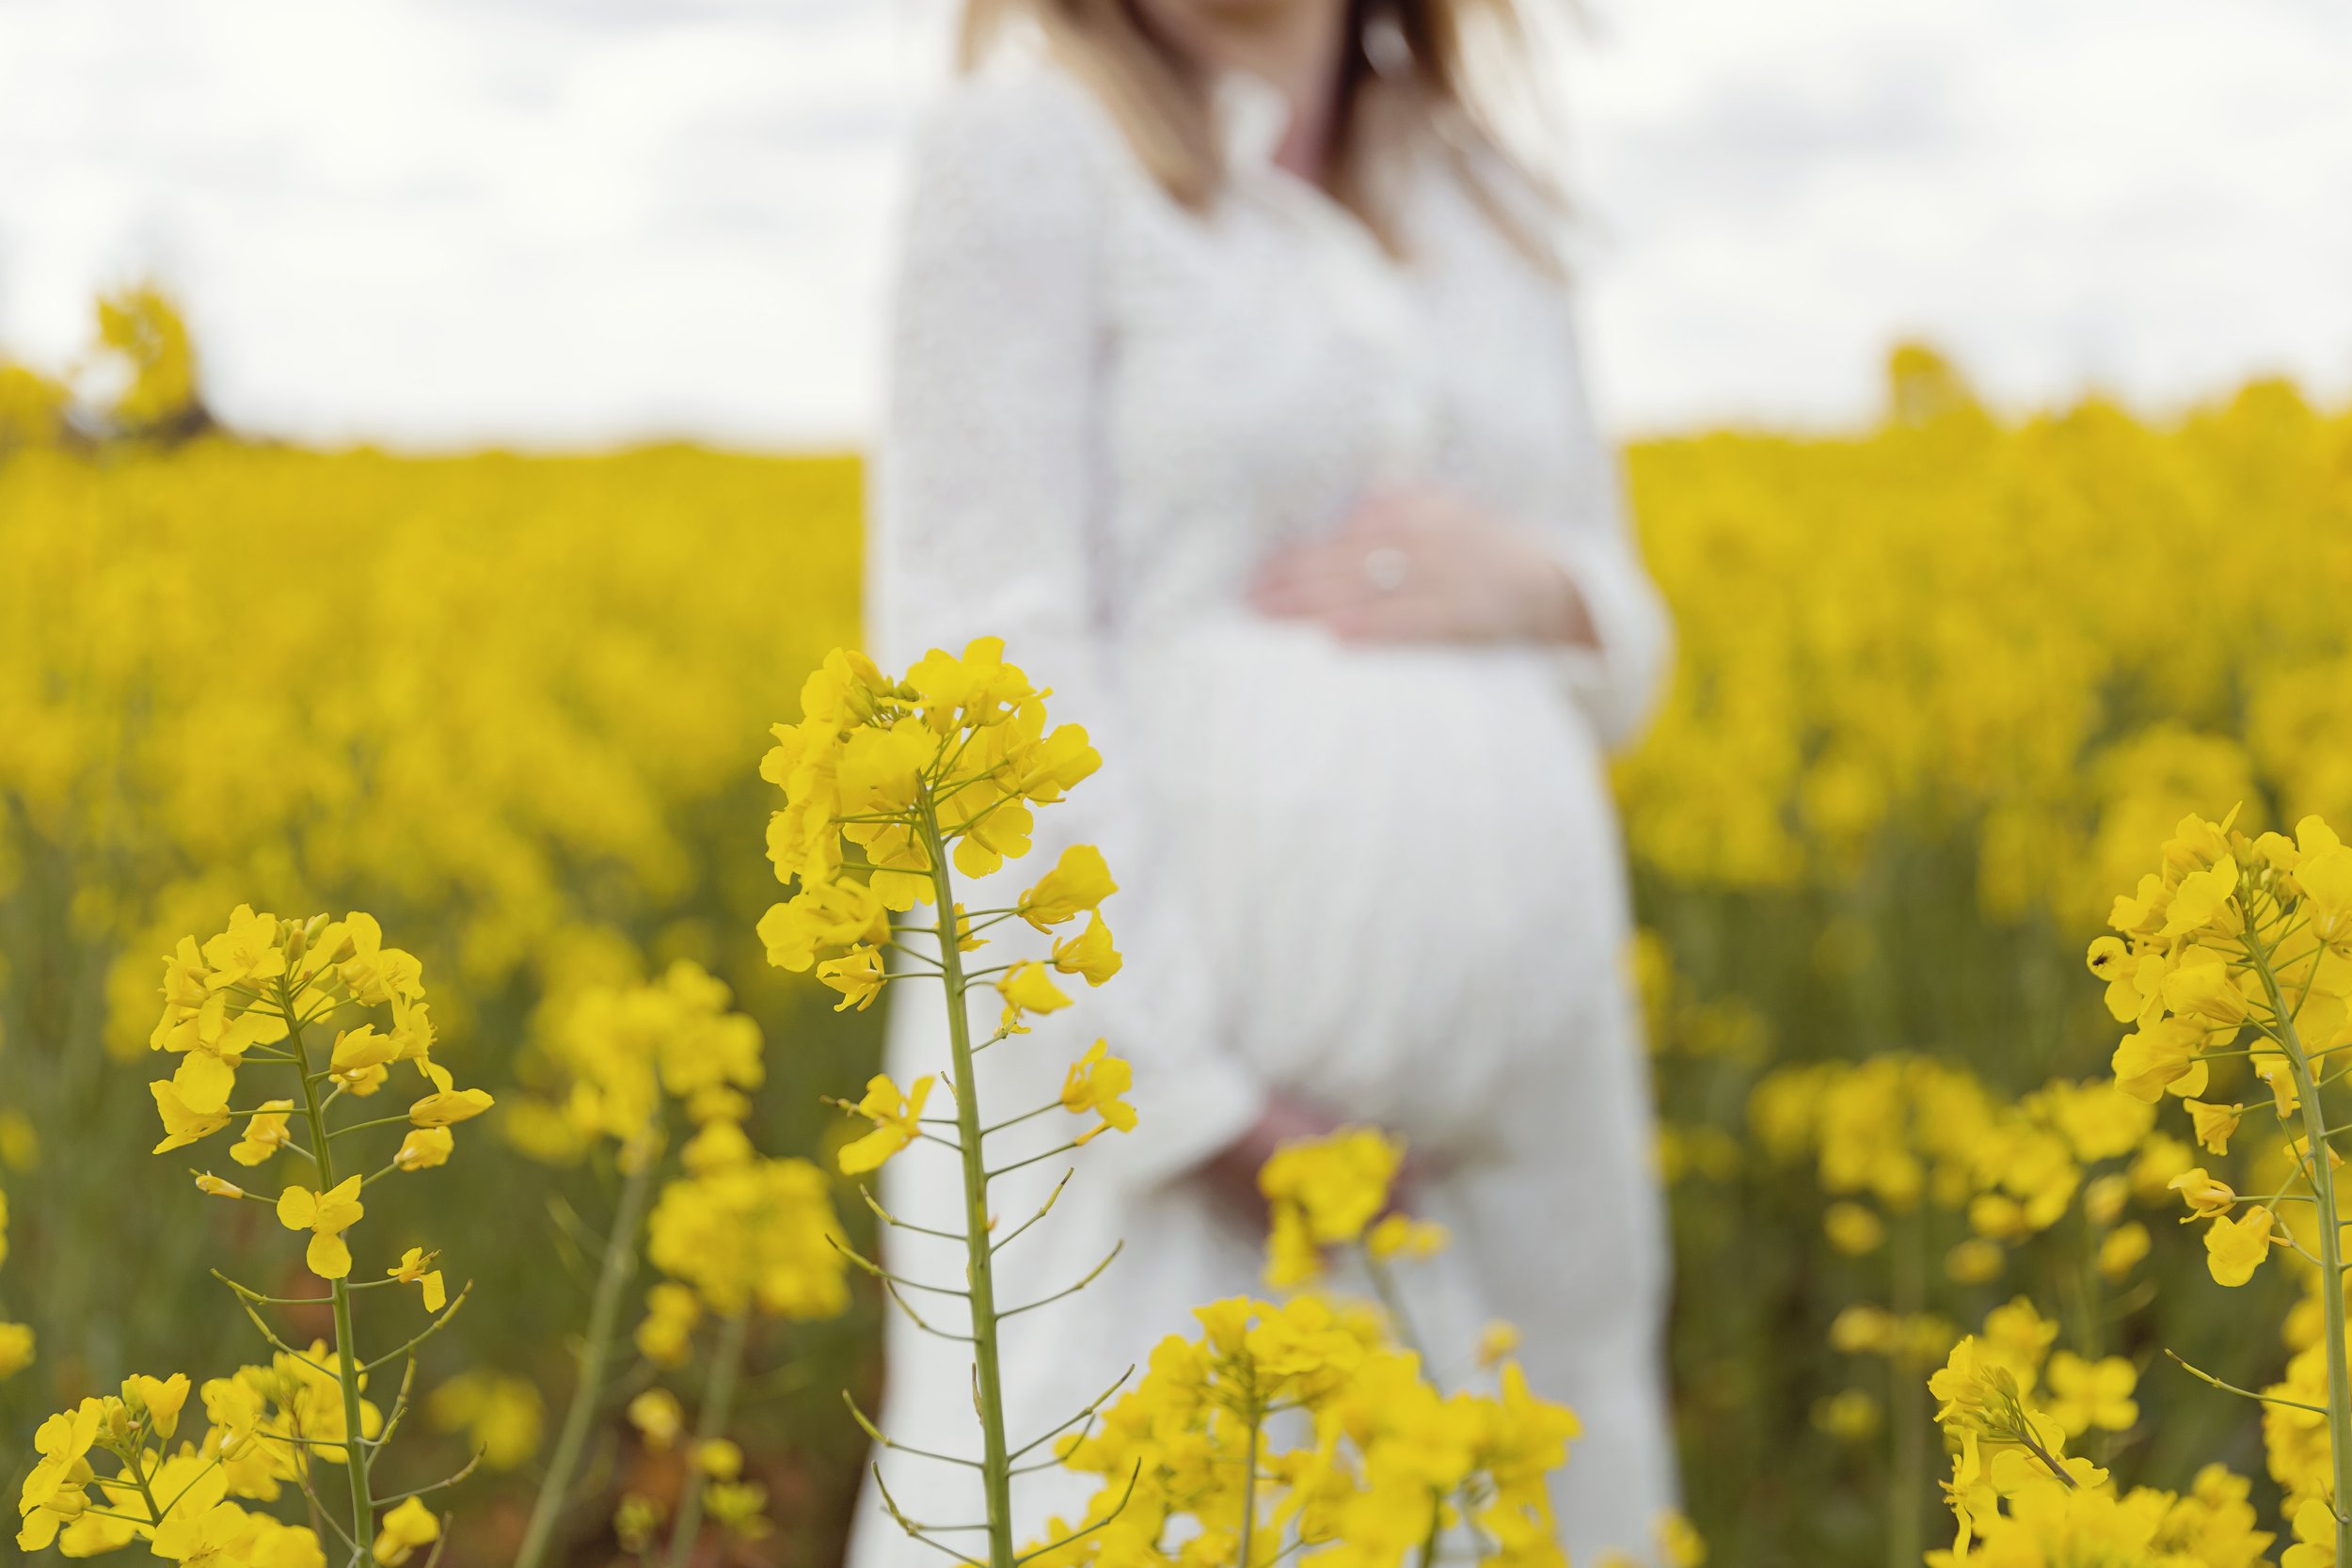 Harpenden-hertfordshire-newborn-maternity-photographer-award-winning.jpg